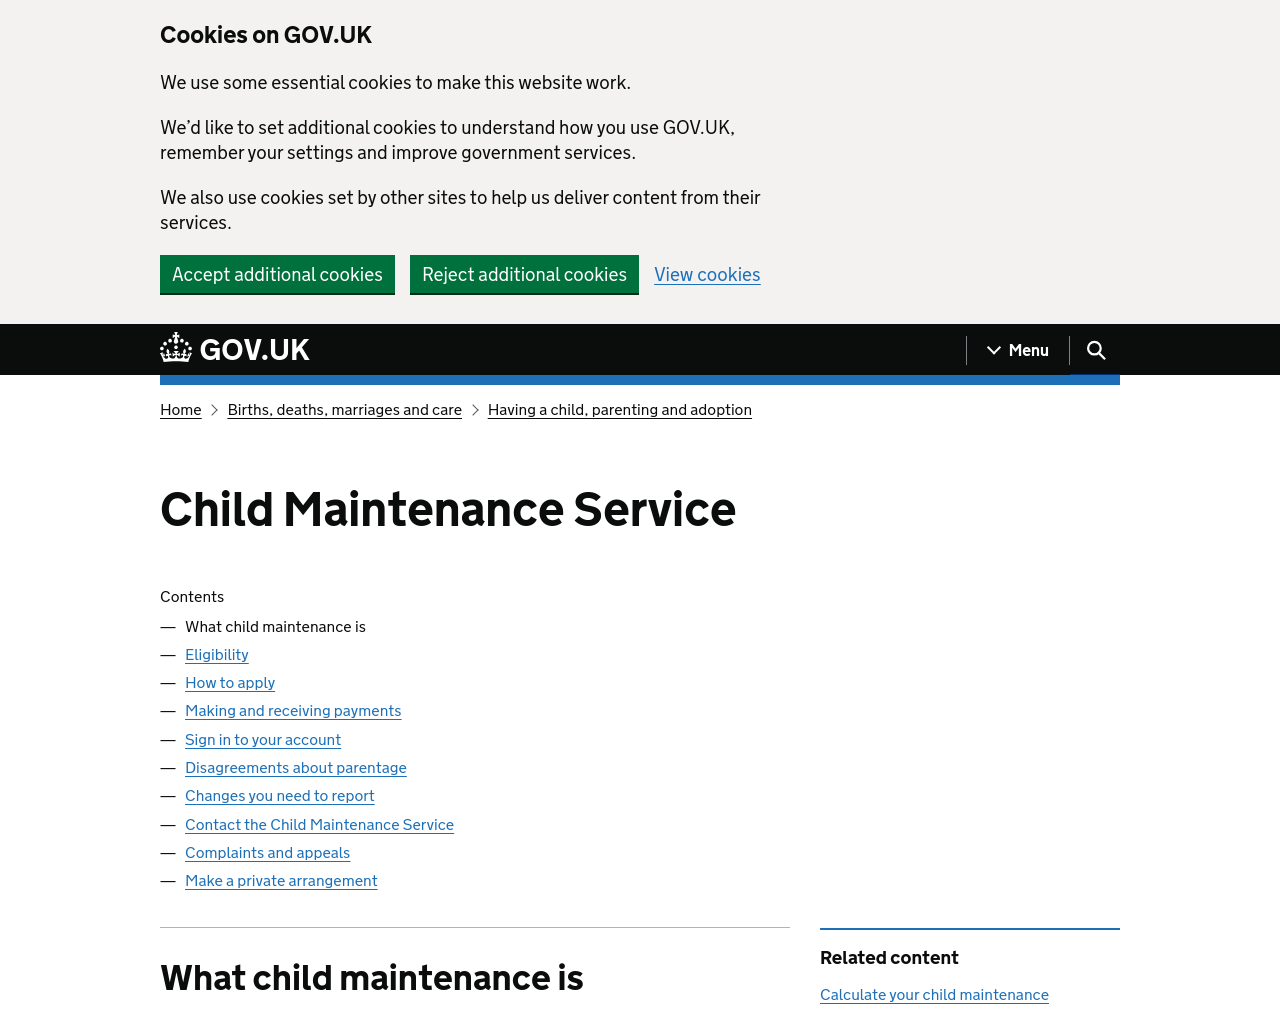 csa.gov.uk